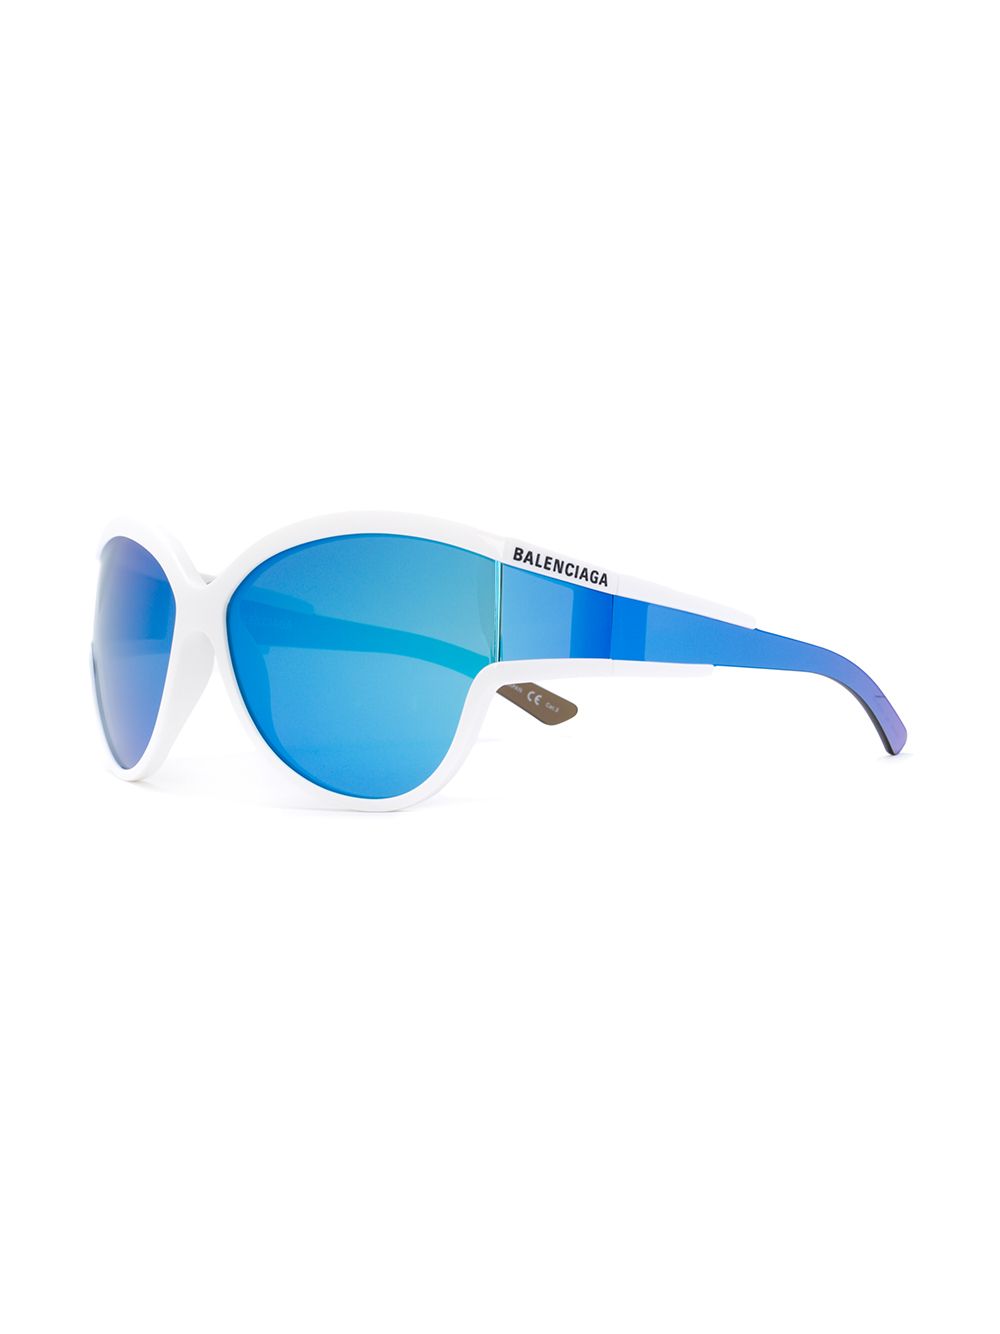 фото Balenciaga eyewear солнцезащитные очки в круглой оправе unlimited